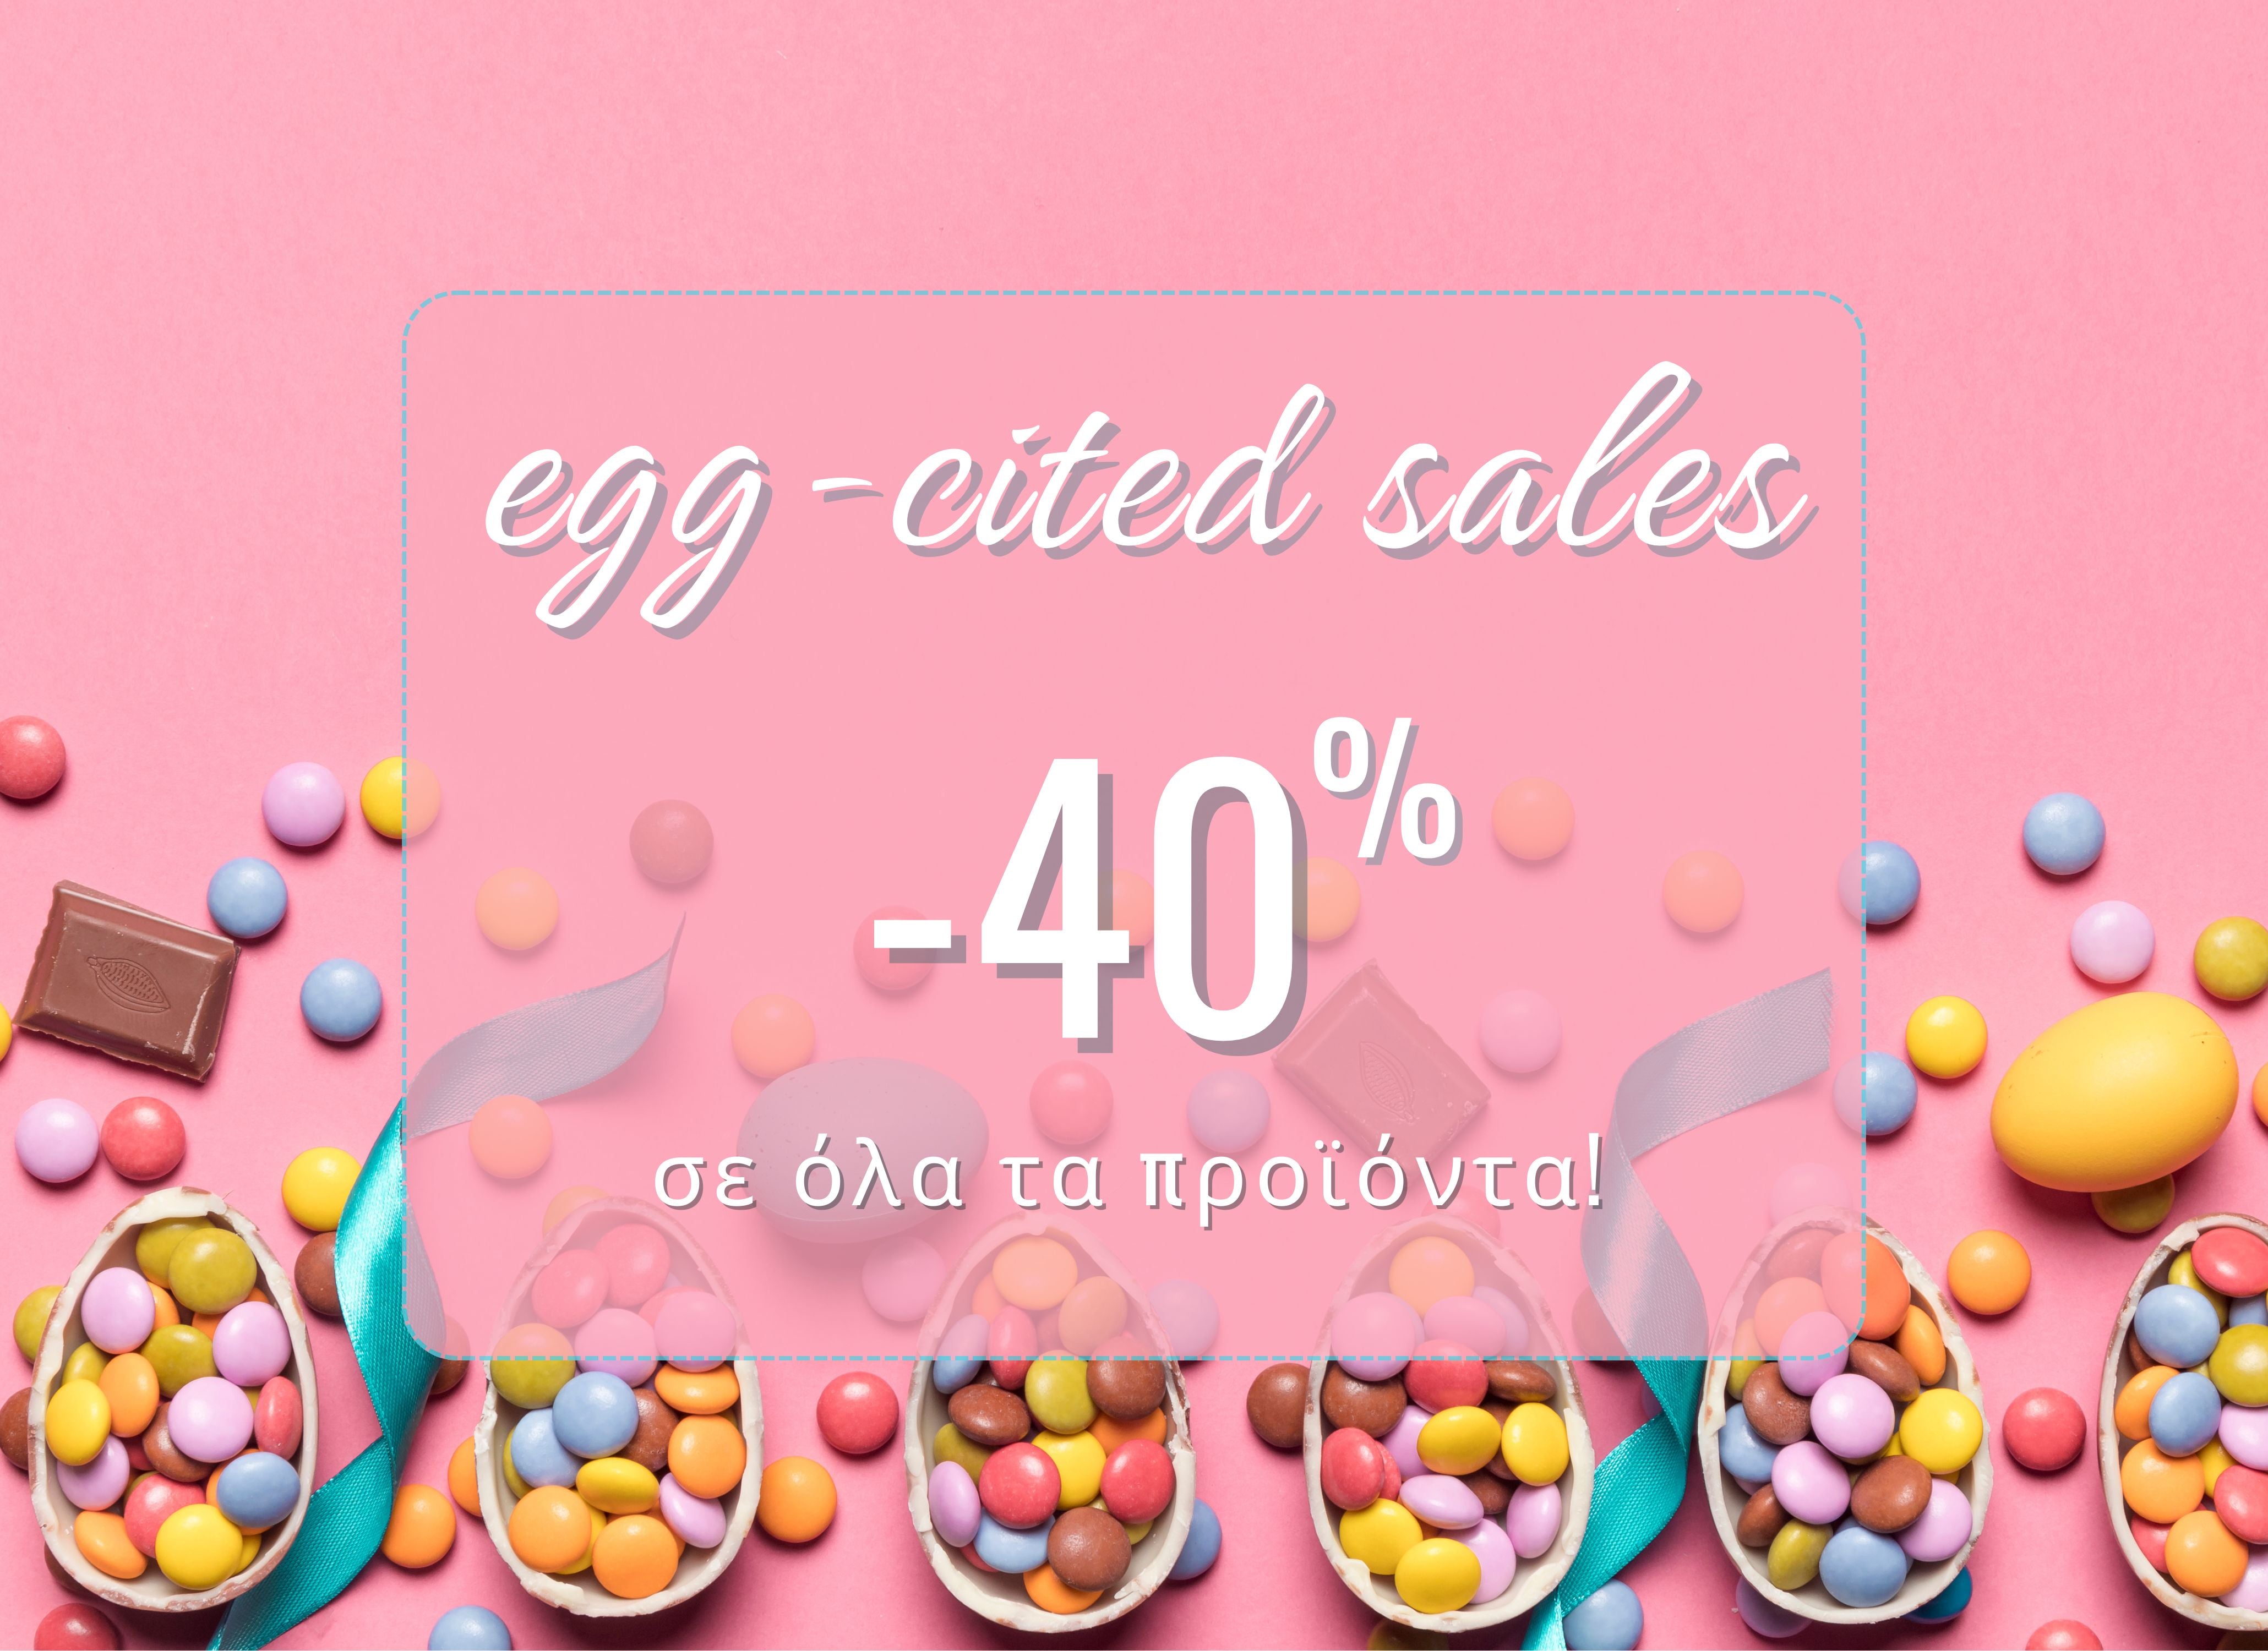 Claresa-Egg-cited-sales-40-01.jpg